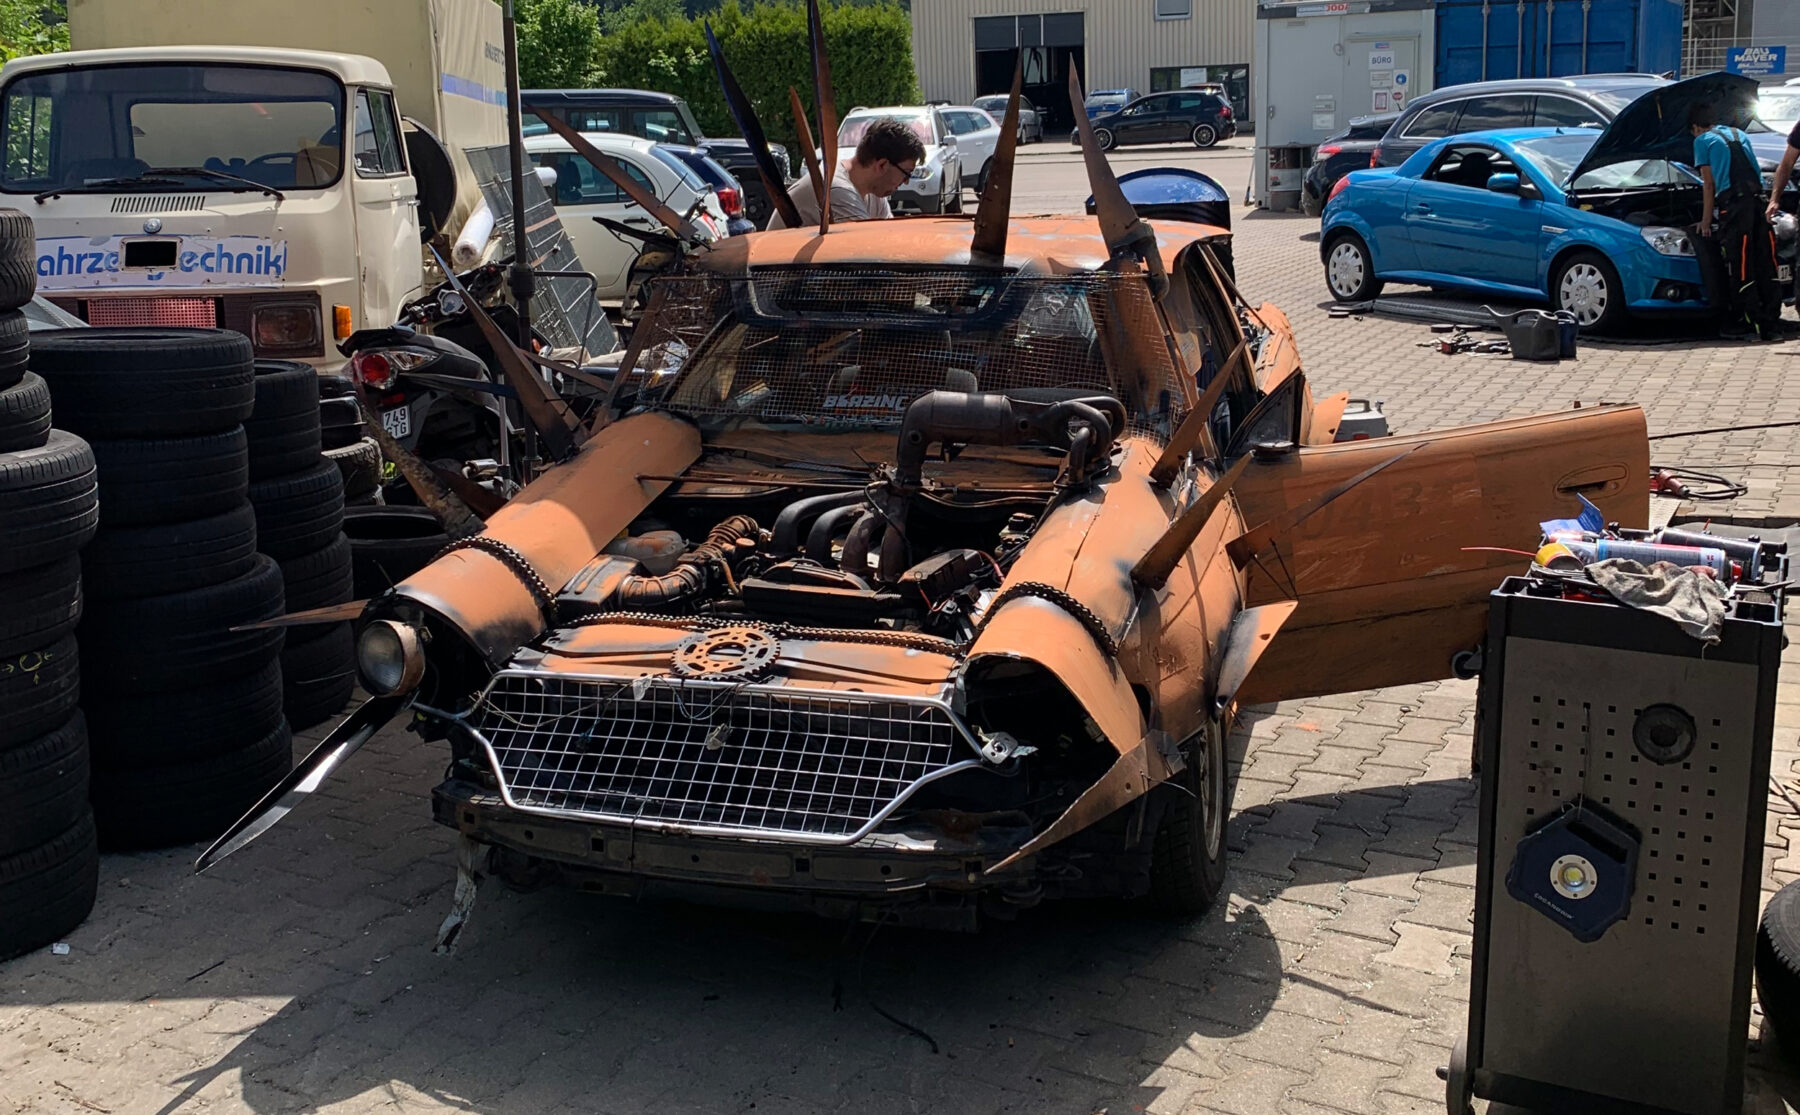 Mad Max - Stuntcar